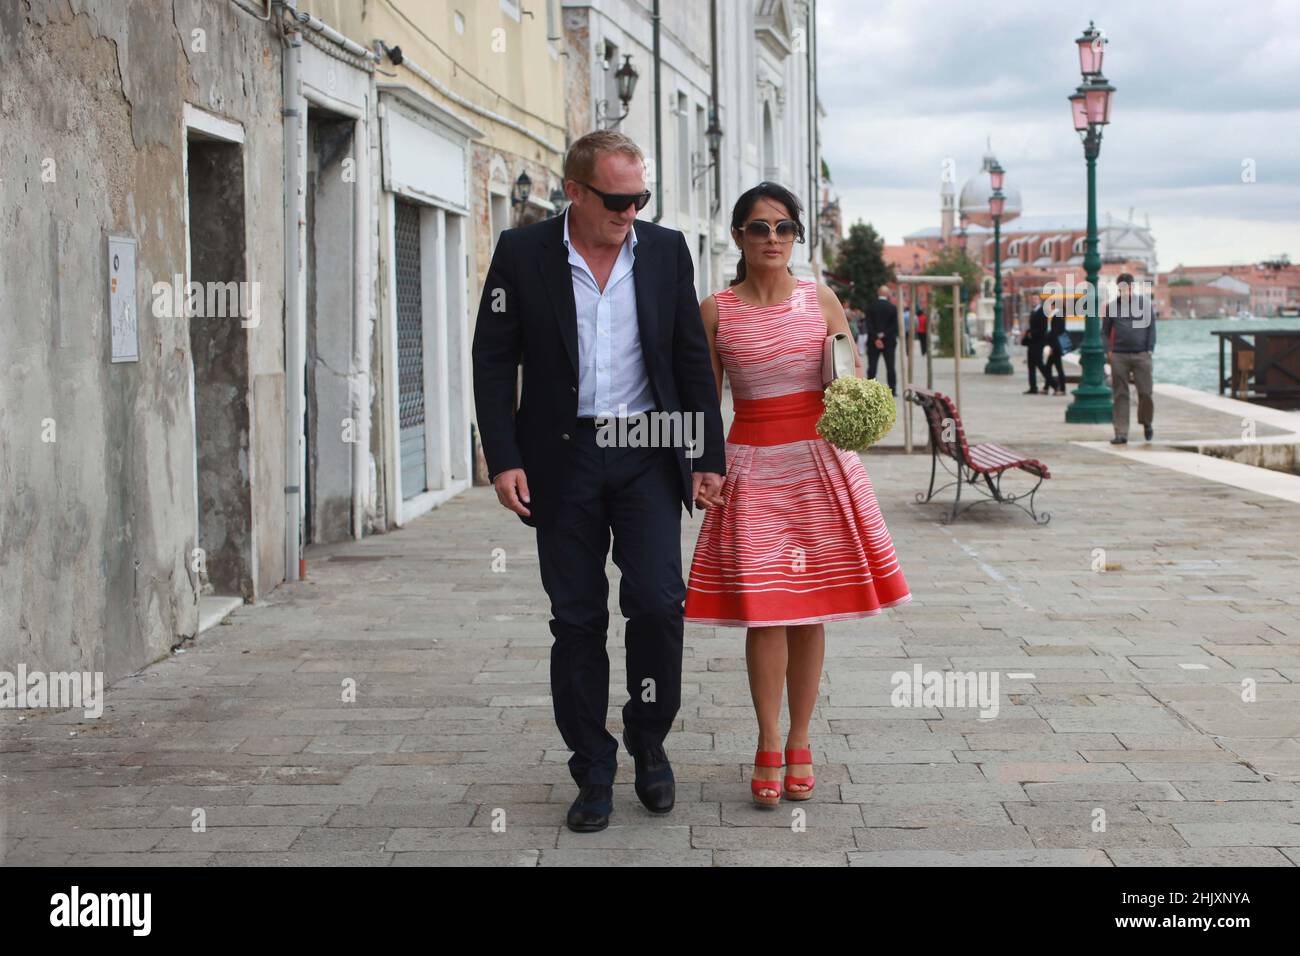 Salma Hayek y su marido Francois-Henri Pinault caminan mano a mano mientras que hacia fuera en Venecia, Italia, septiembre de 1 2012 Foto de stock